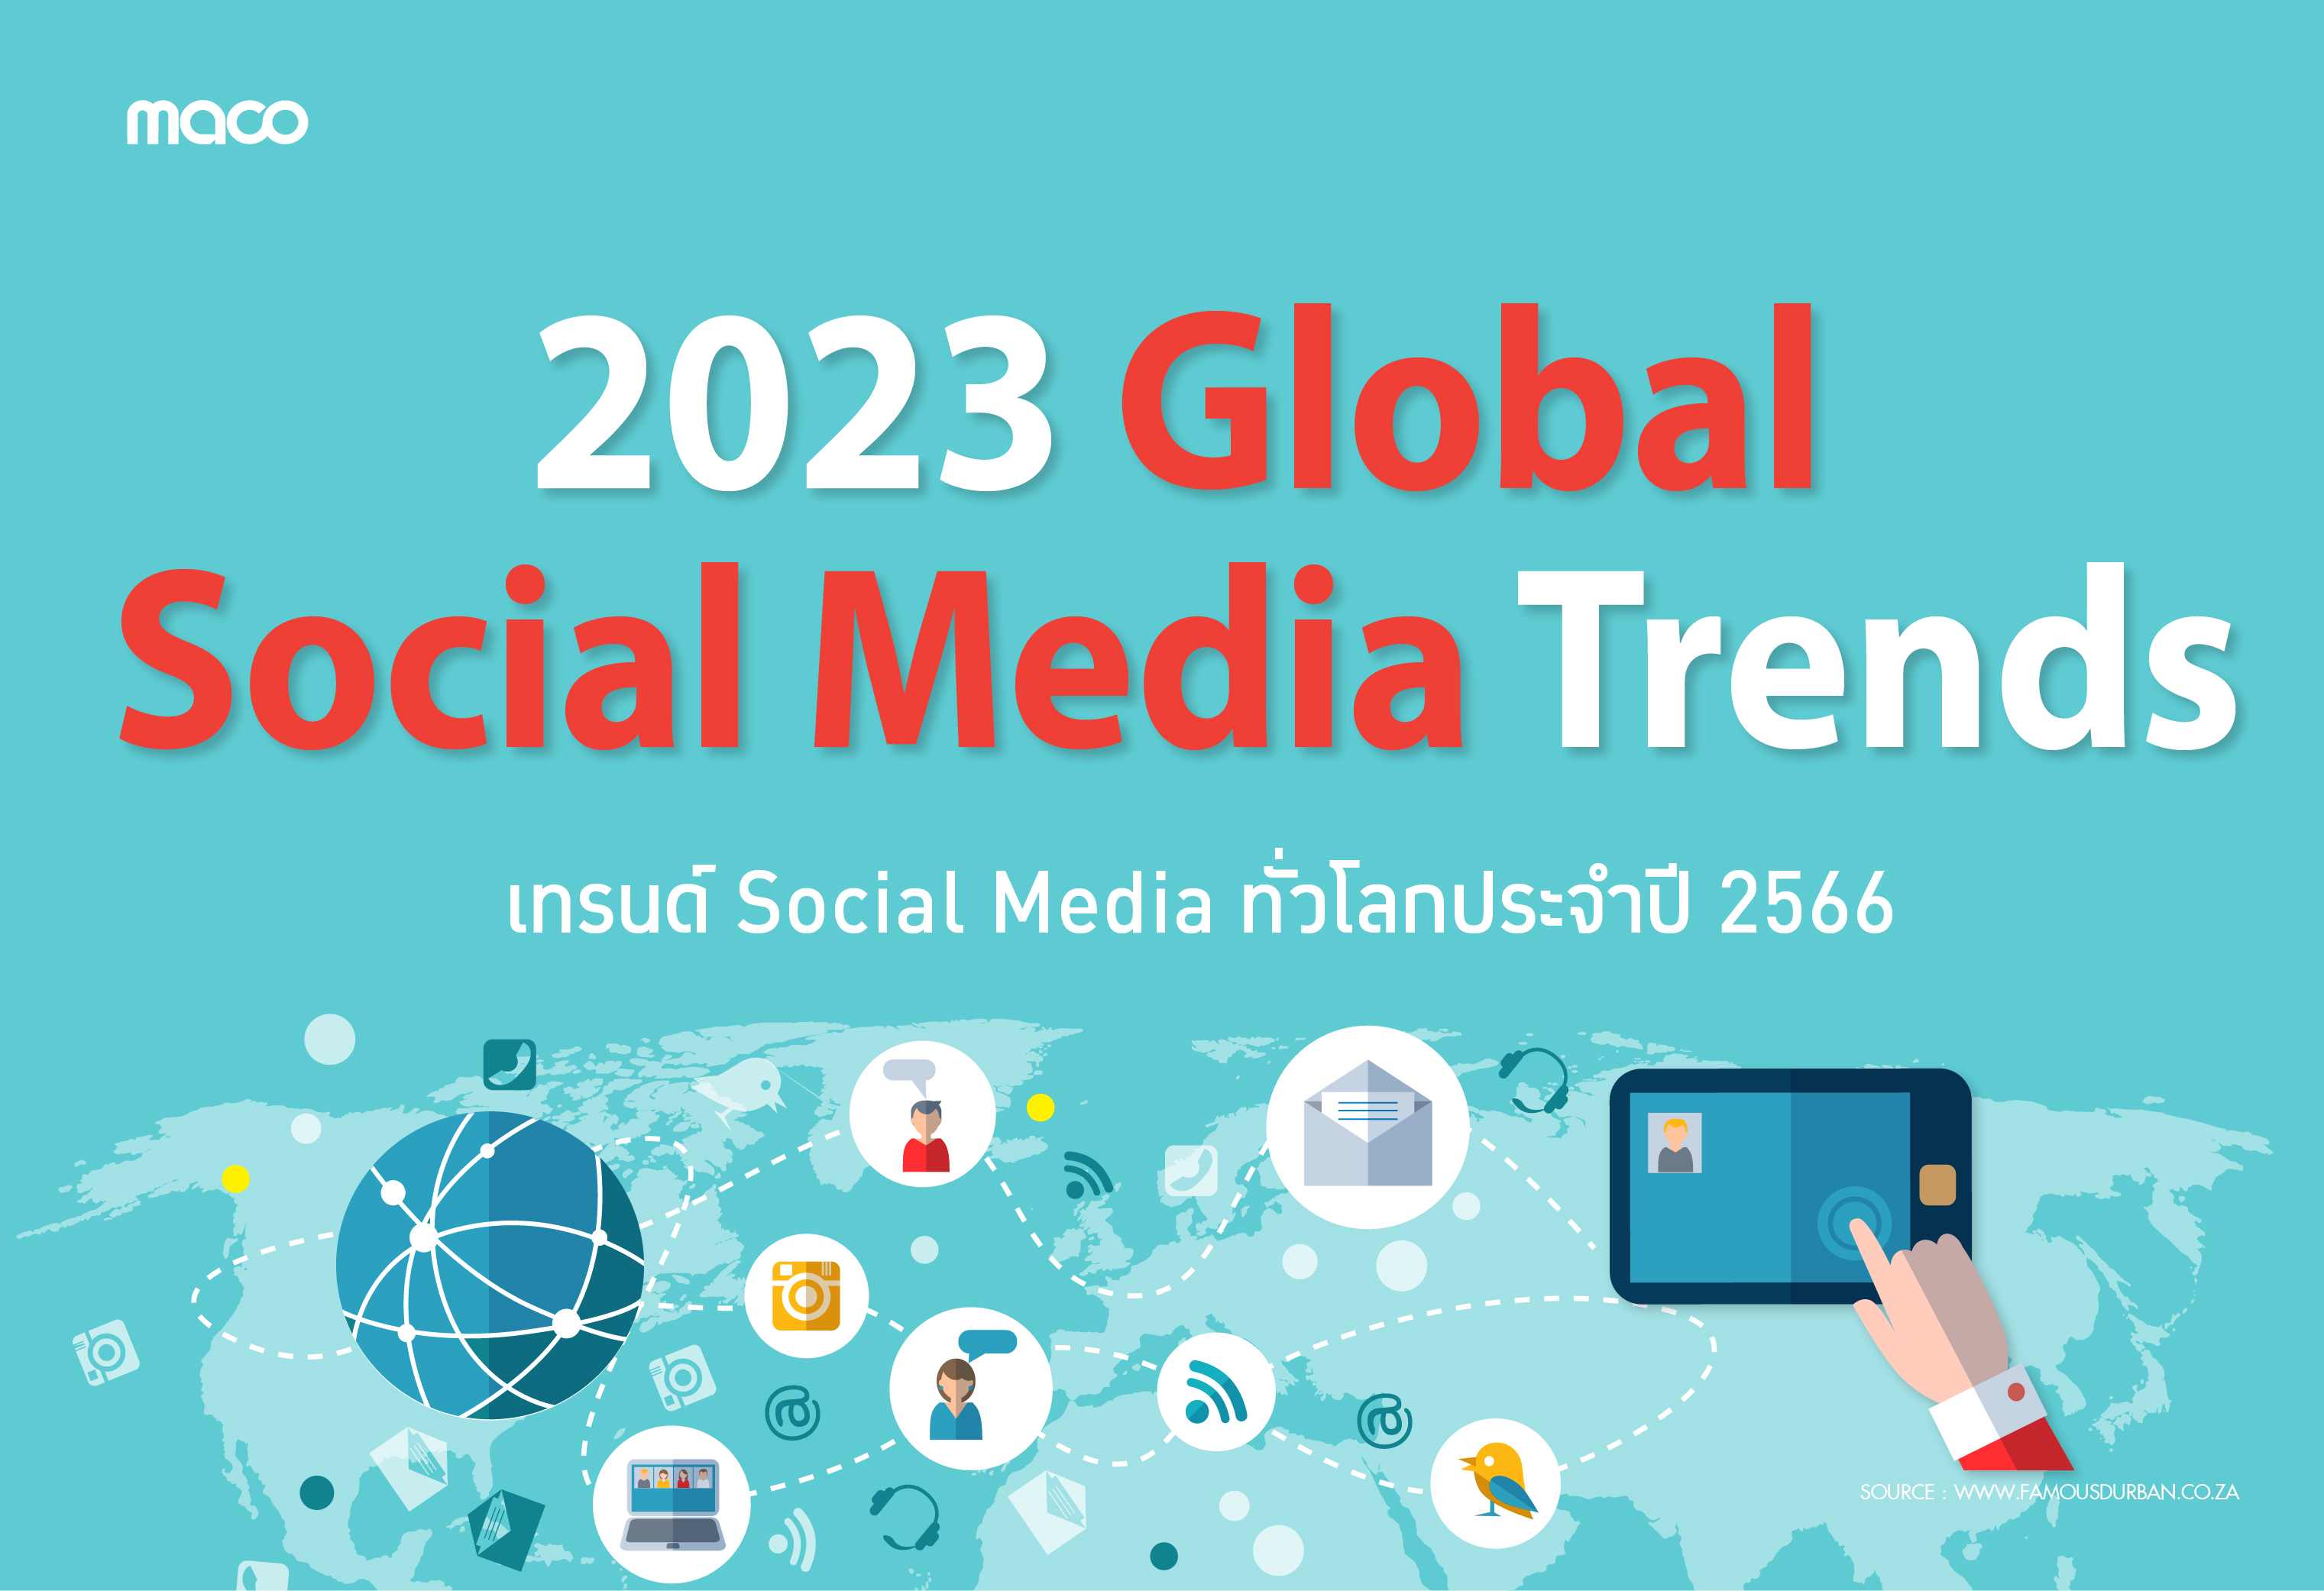 เทรนด์ Social Media ทั่วโลกประจำปี 2566